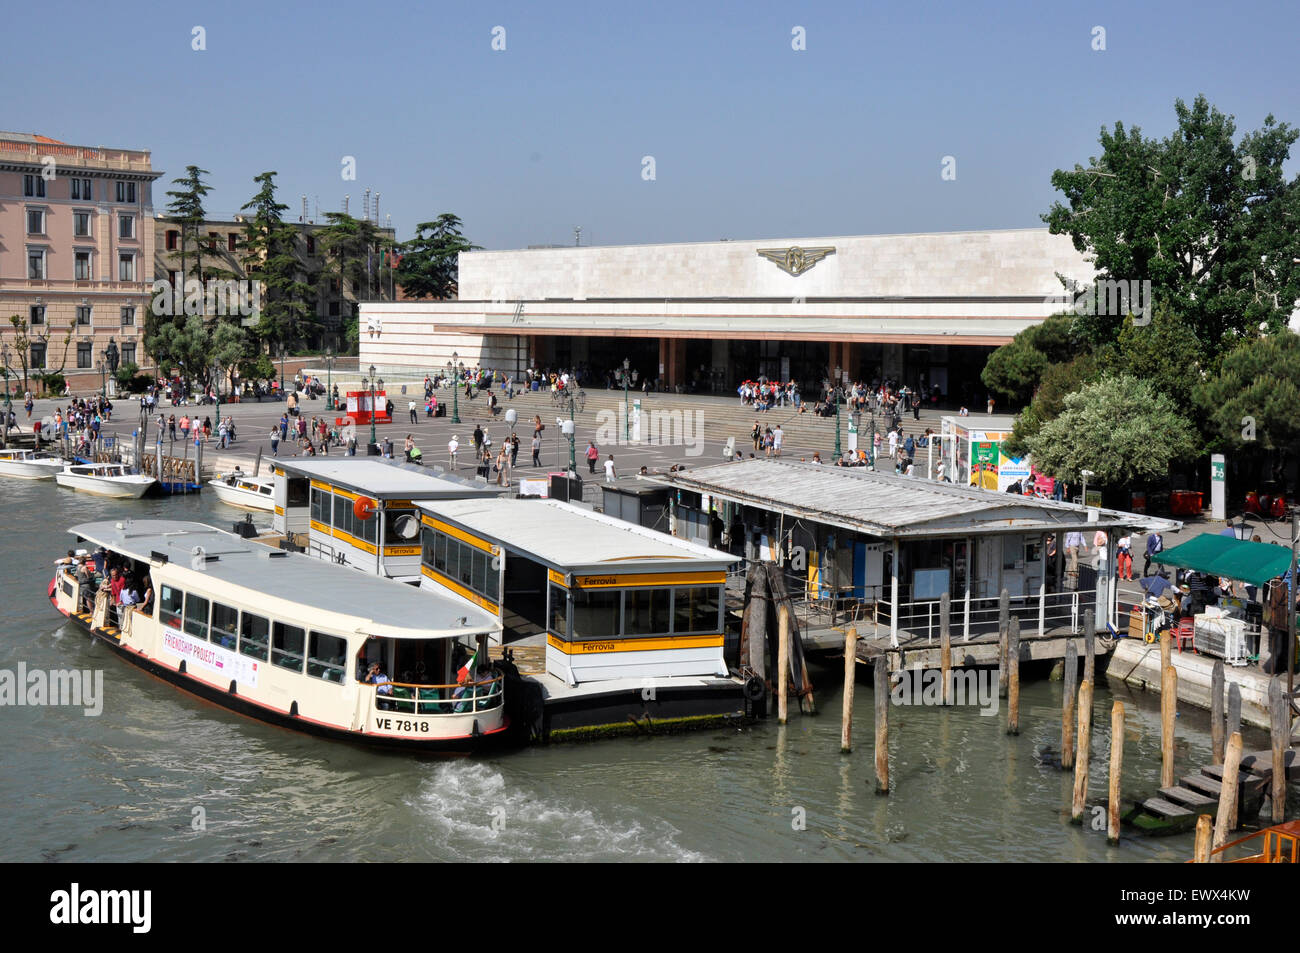 Italia - Venezia Canal Grande - zona di Cannaregio - Ferrovia/Santa Lucia - La stazione ferroviaria e la fermata del vaporetto. Foto Stock